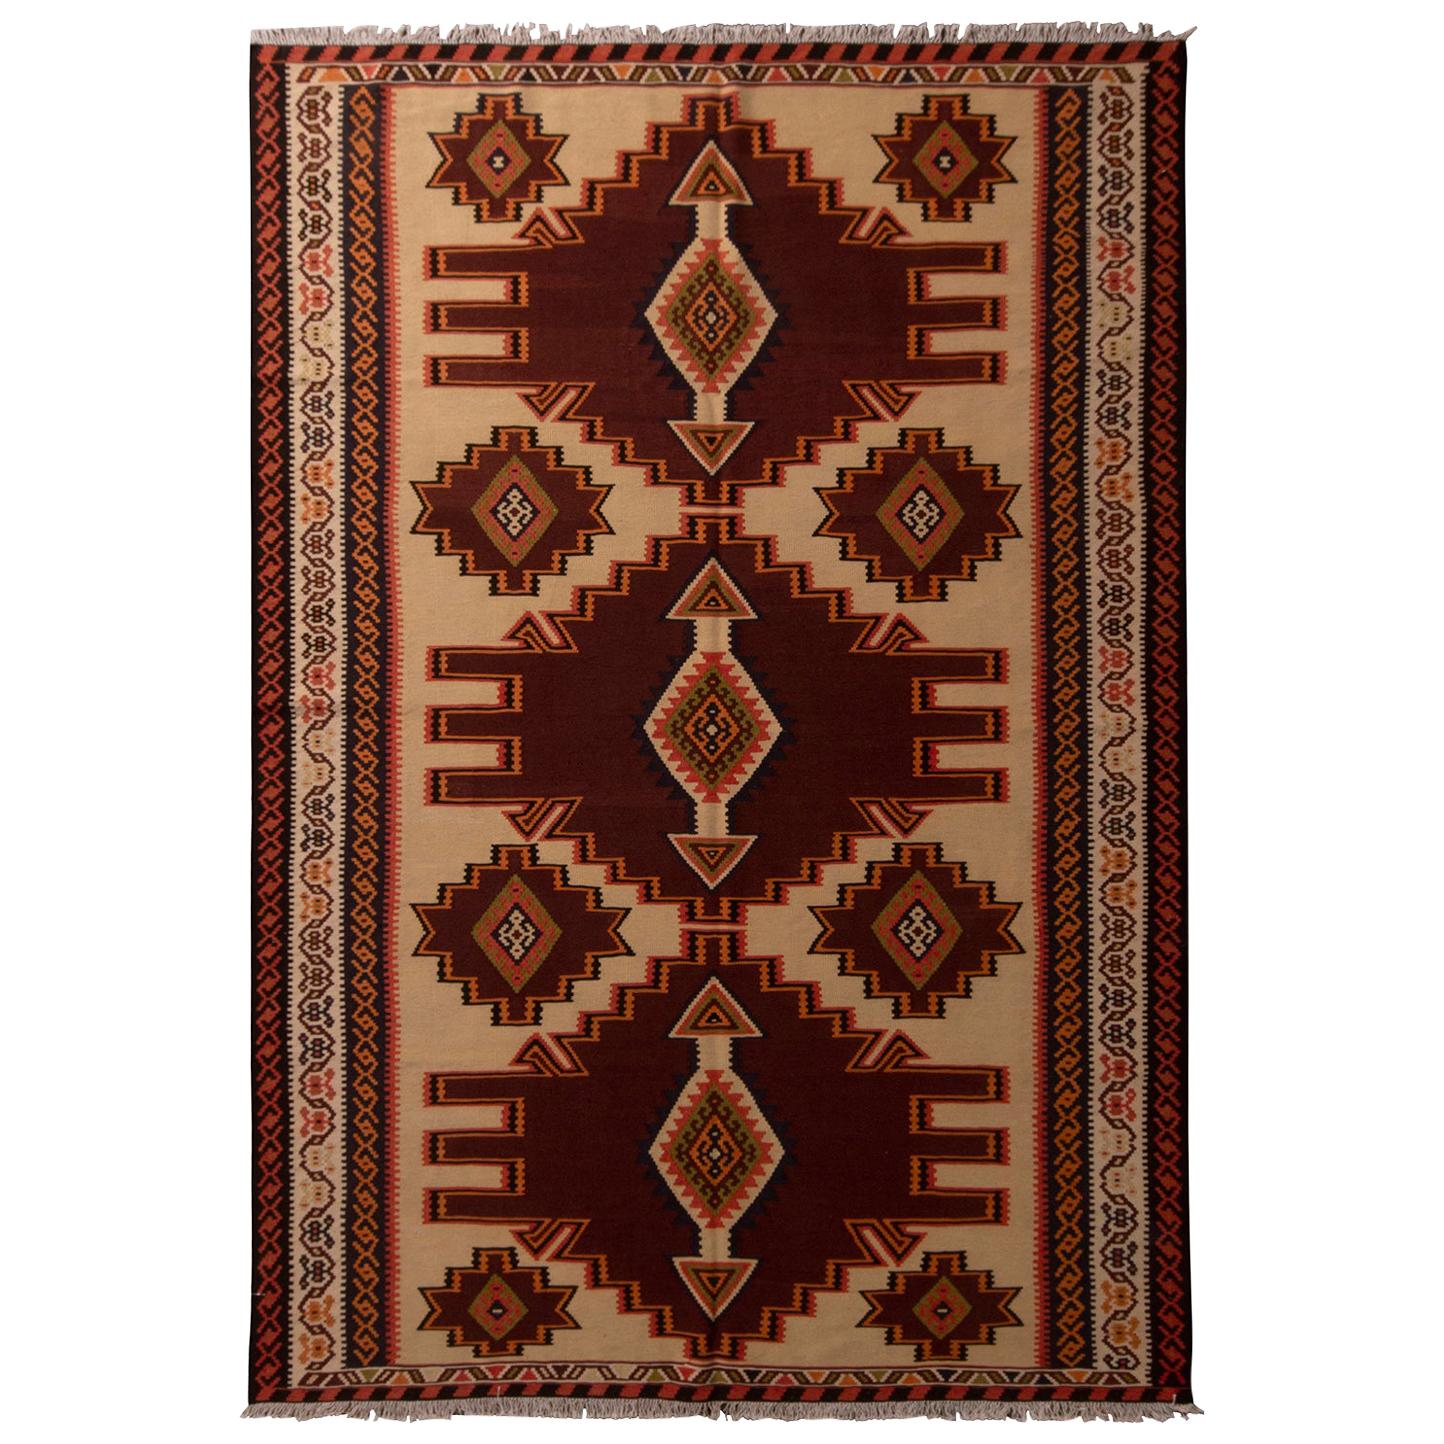 Tapis Kilim persan azerbaïdjan géométrique vintage en laine beige, marron et rouge par Kilim